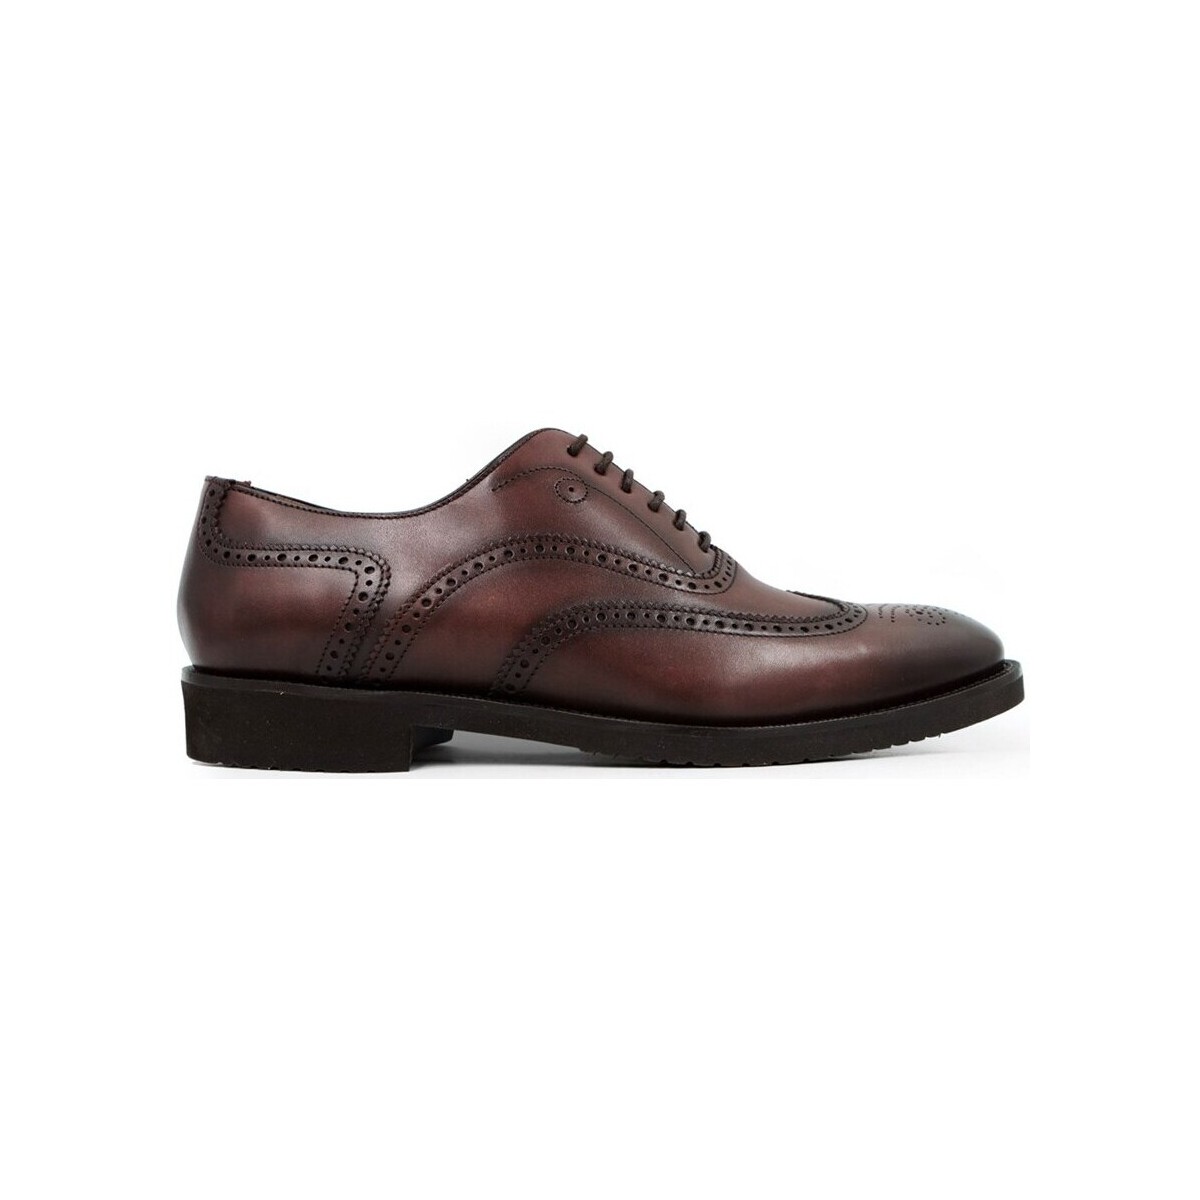 Chaussures Homme Richelieu Finsbury Shoes KENDAL Marron